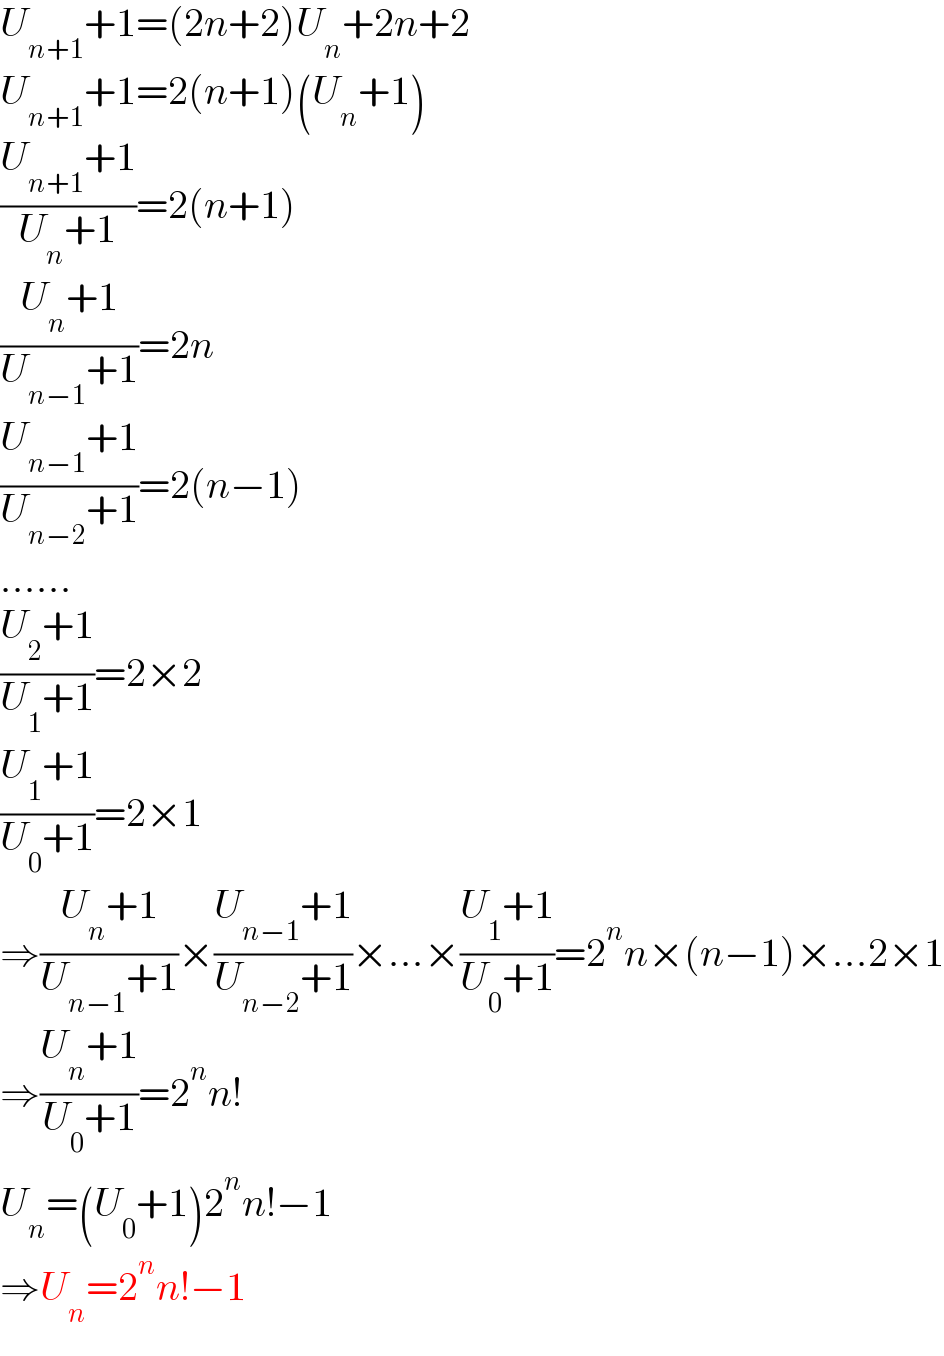 U_(n+1) +1=(2n+2)U_n +2n+2  U_(n+1) +1=2(n+1)(U_n +1)  ((U_(n+1) +1)/(U_n +1))=2(n+1)  ((U_n +1)/(U_(n−1) +1))=2n  ((U_(n−1) +1)/(U_(n−2) +1))=2(n−1)  ......  ((U_2 +1)/(U_1 +1))=2×2  ((U_1 +1)/(U_0 +1))=2×1  ⇒((U_n +1)/(U_(n−1) +1))×((U_(n−1) +1)/(U_(n−2) +1))×...×((U_1 +1)/(U_0 +1))=2^n n×(n−1)×...2×1  ⇒((U_n +1)/(U_0 +1))=2^n n!  U_n =(U_0 +1)2^n n!−1  ⇒U_n =2^n n!−1  